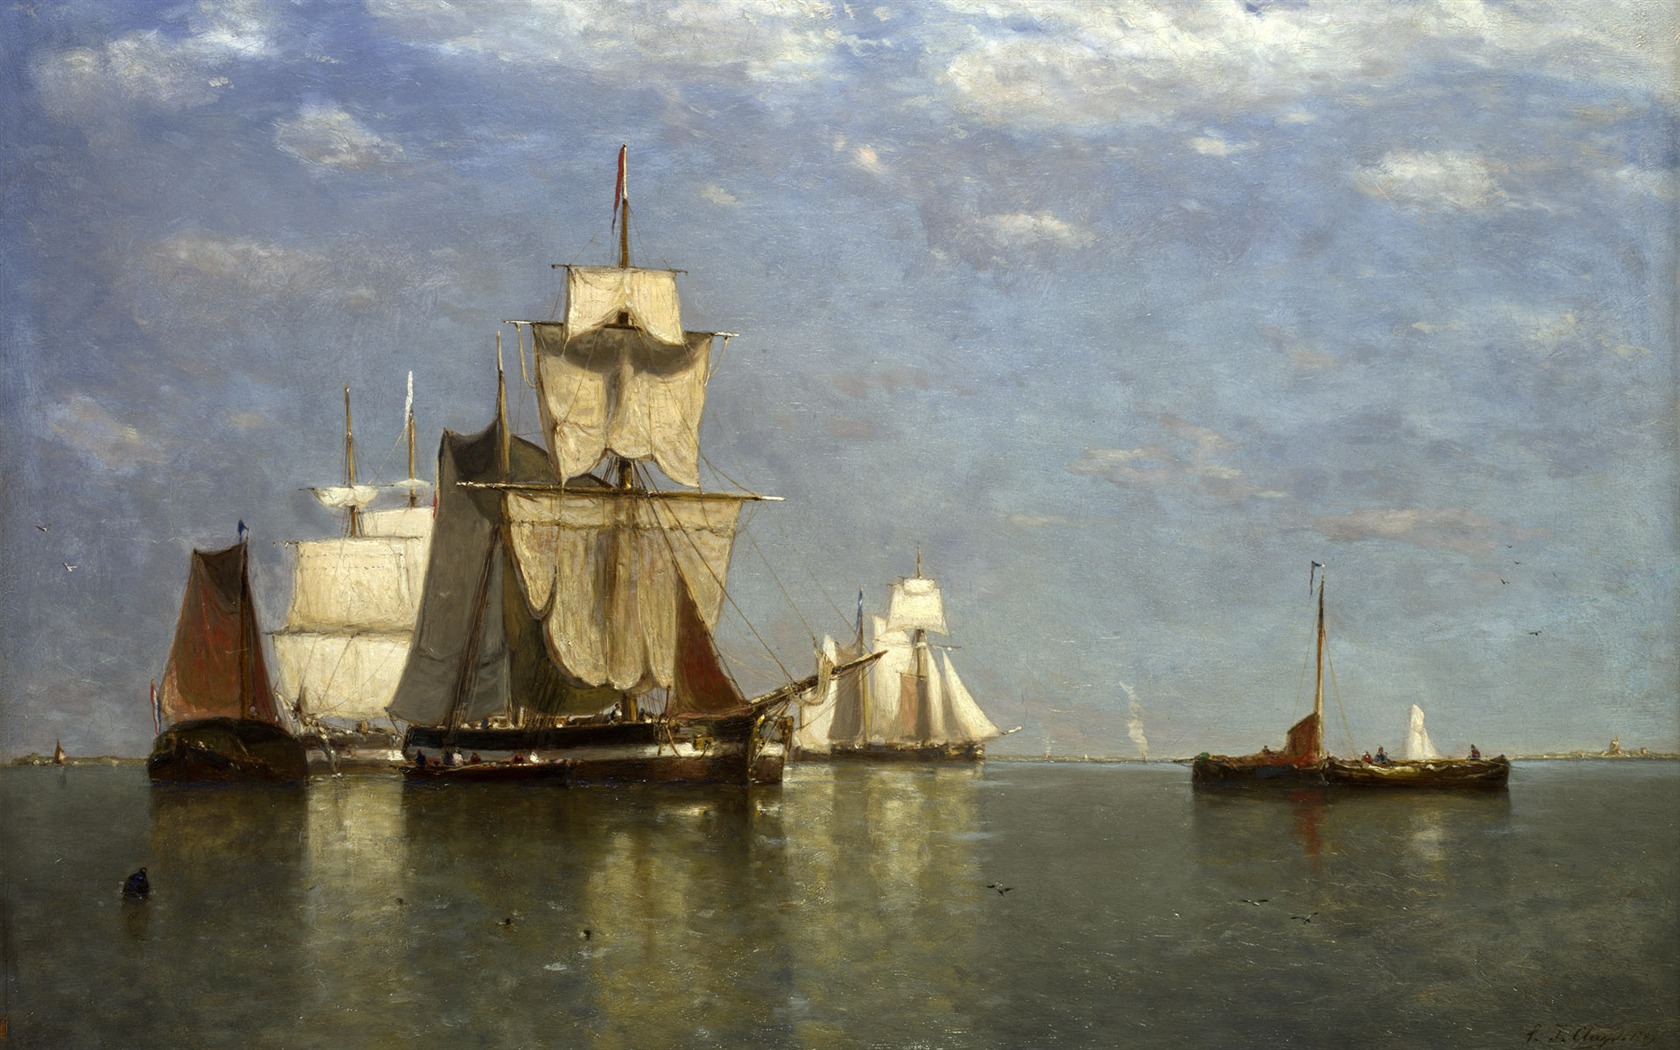 伦敦画廊帆船 壁纸(二)11 - 1680x1050